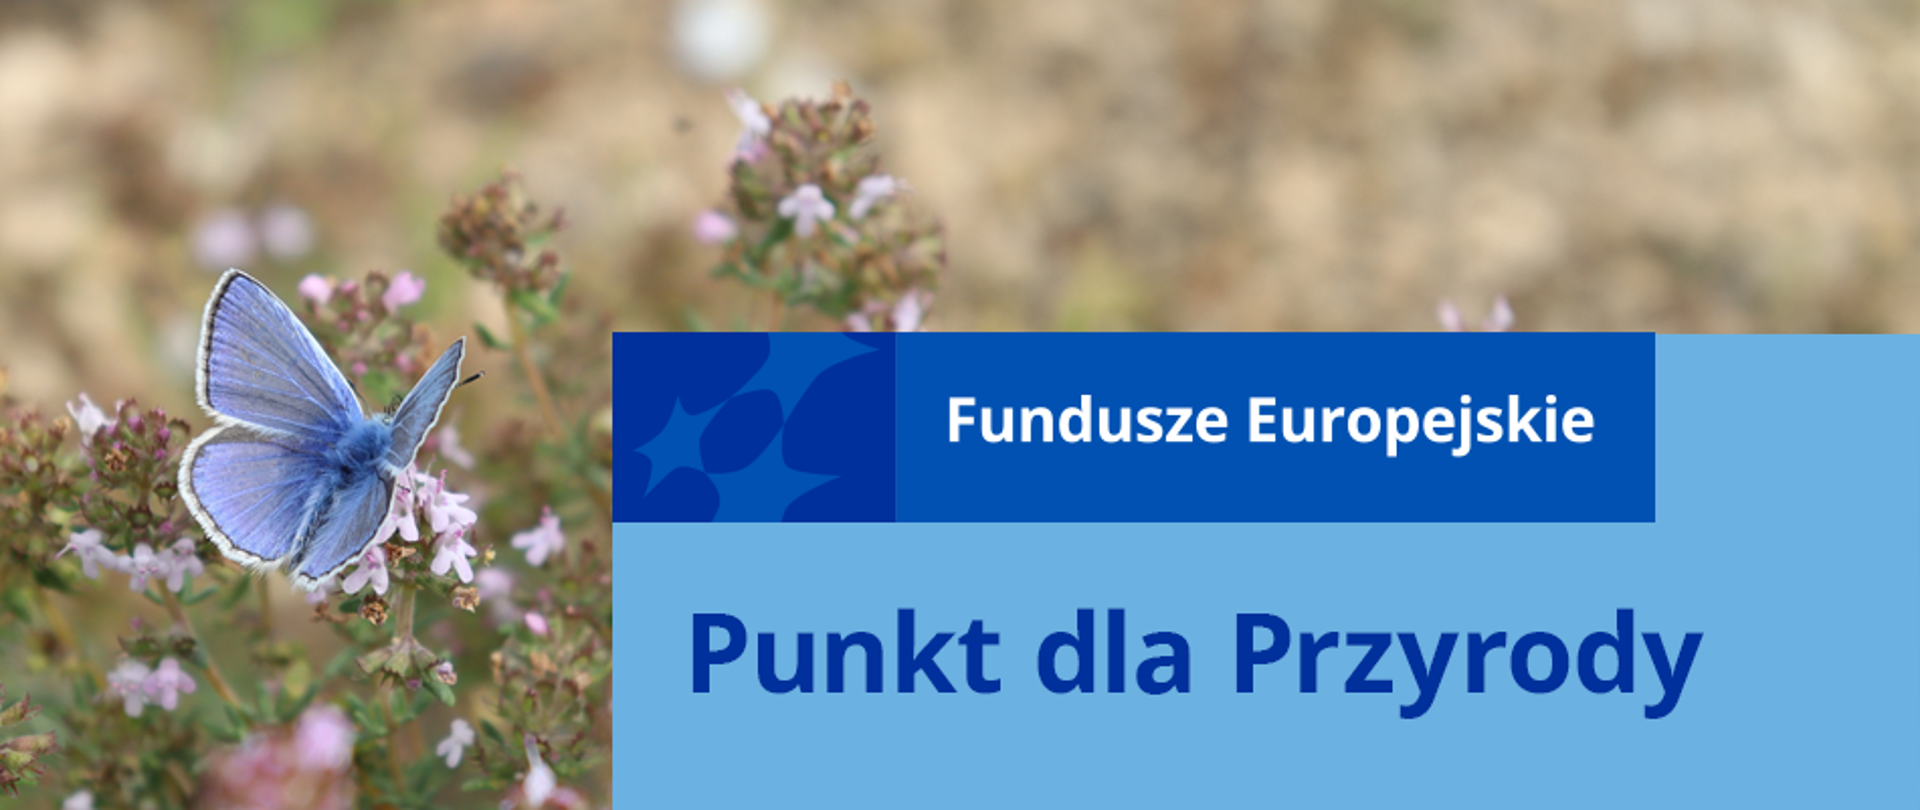 Po lewej stronie niebieski motyl na tle łąki, a po prawej napis: "Fundusze Europejskie Punkt dla Przyrody"